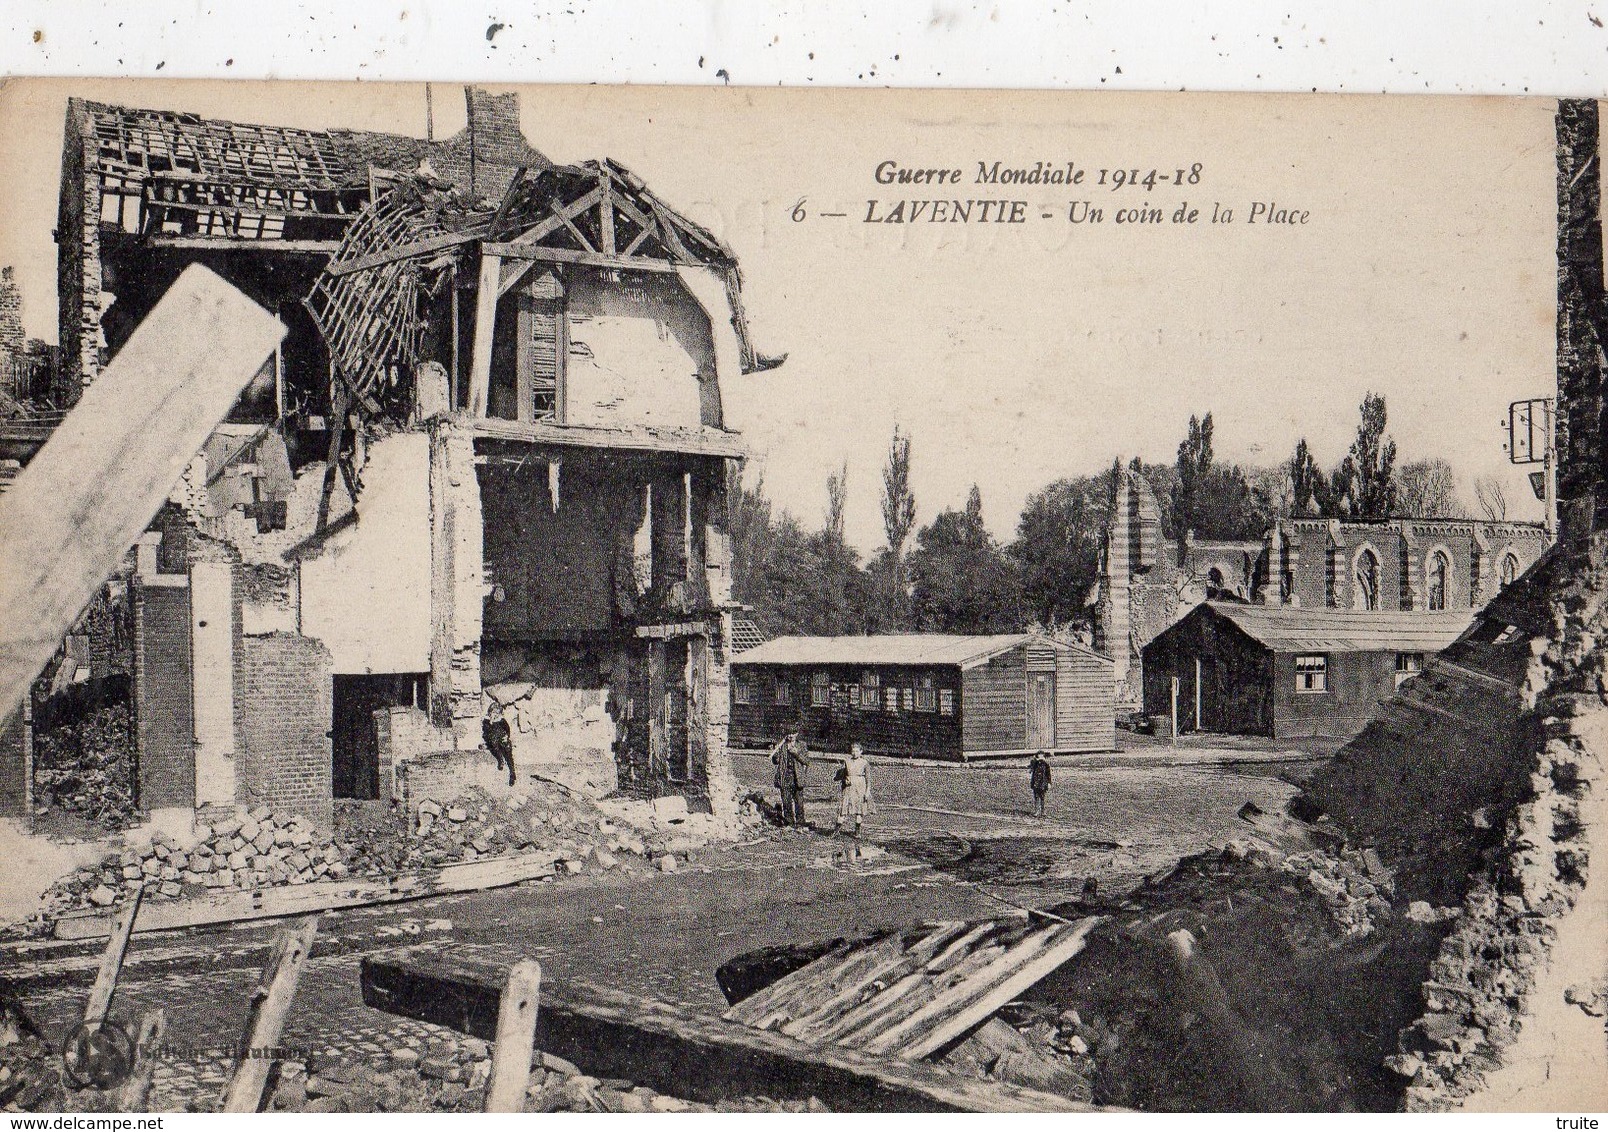 LAVENTIE GUERRE MONDIALE 1914 1918 UN COIN DE LA PLACE - Laventie